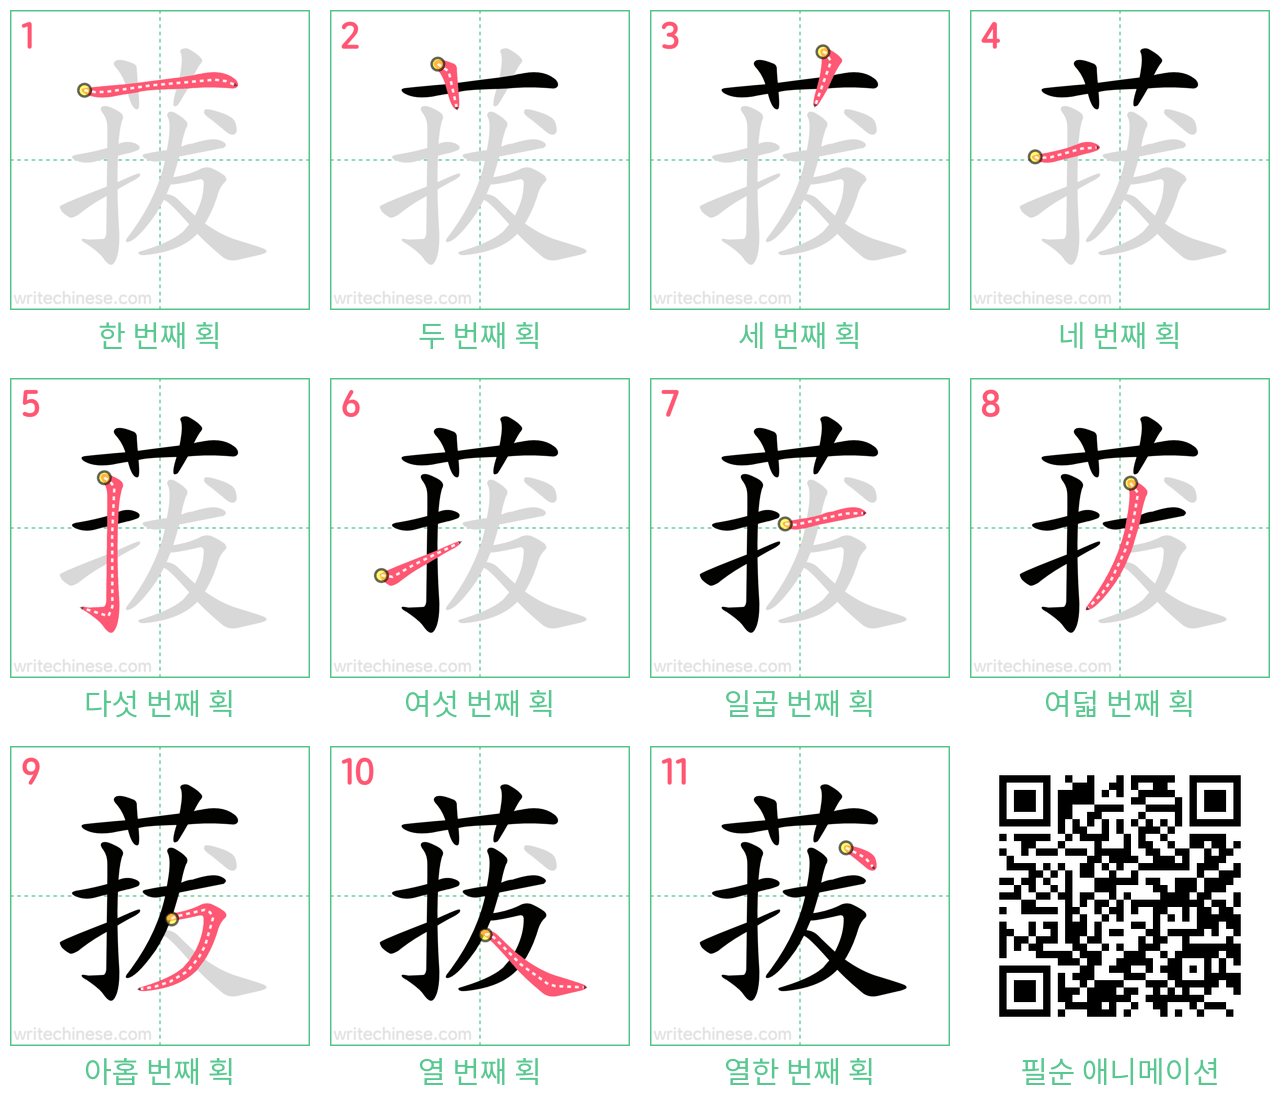 菝 step-by-step stroke order diagrams